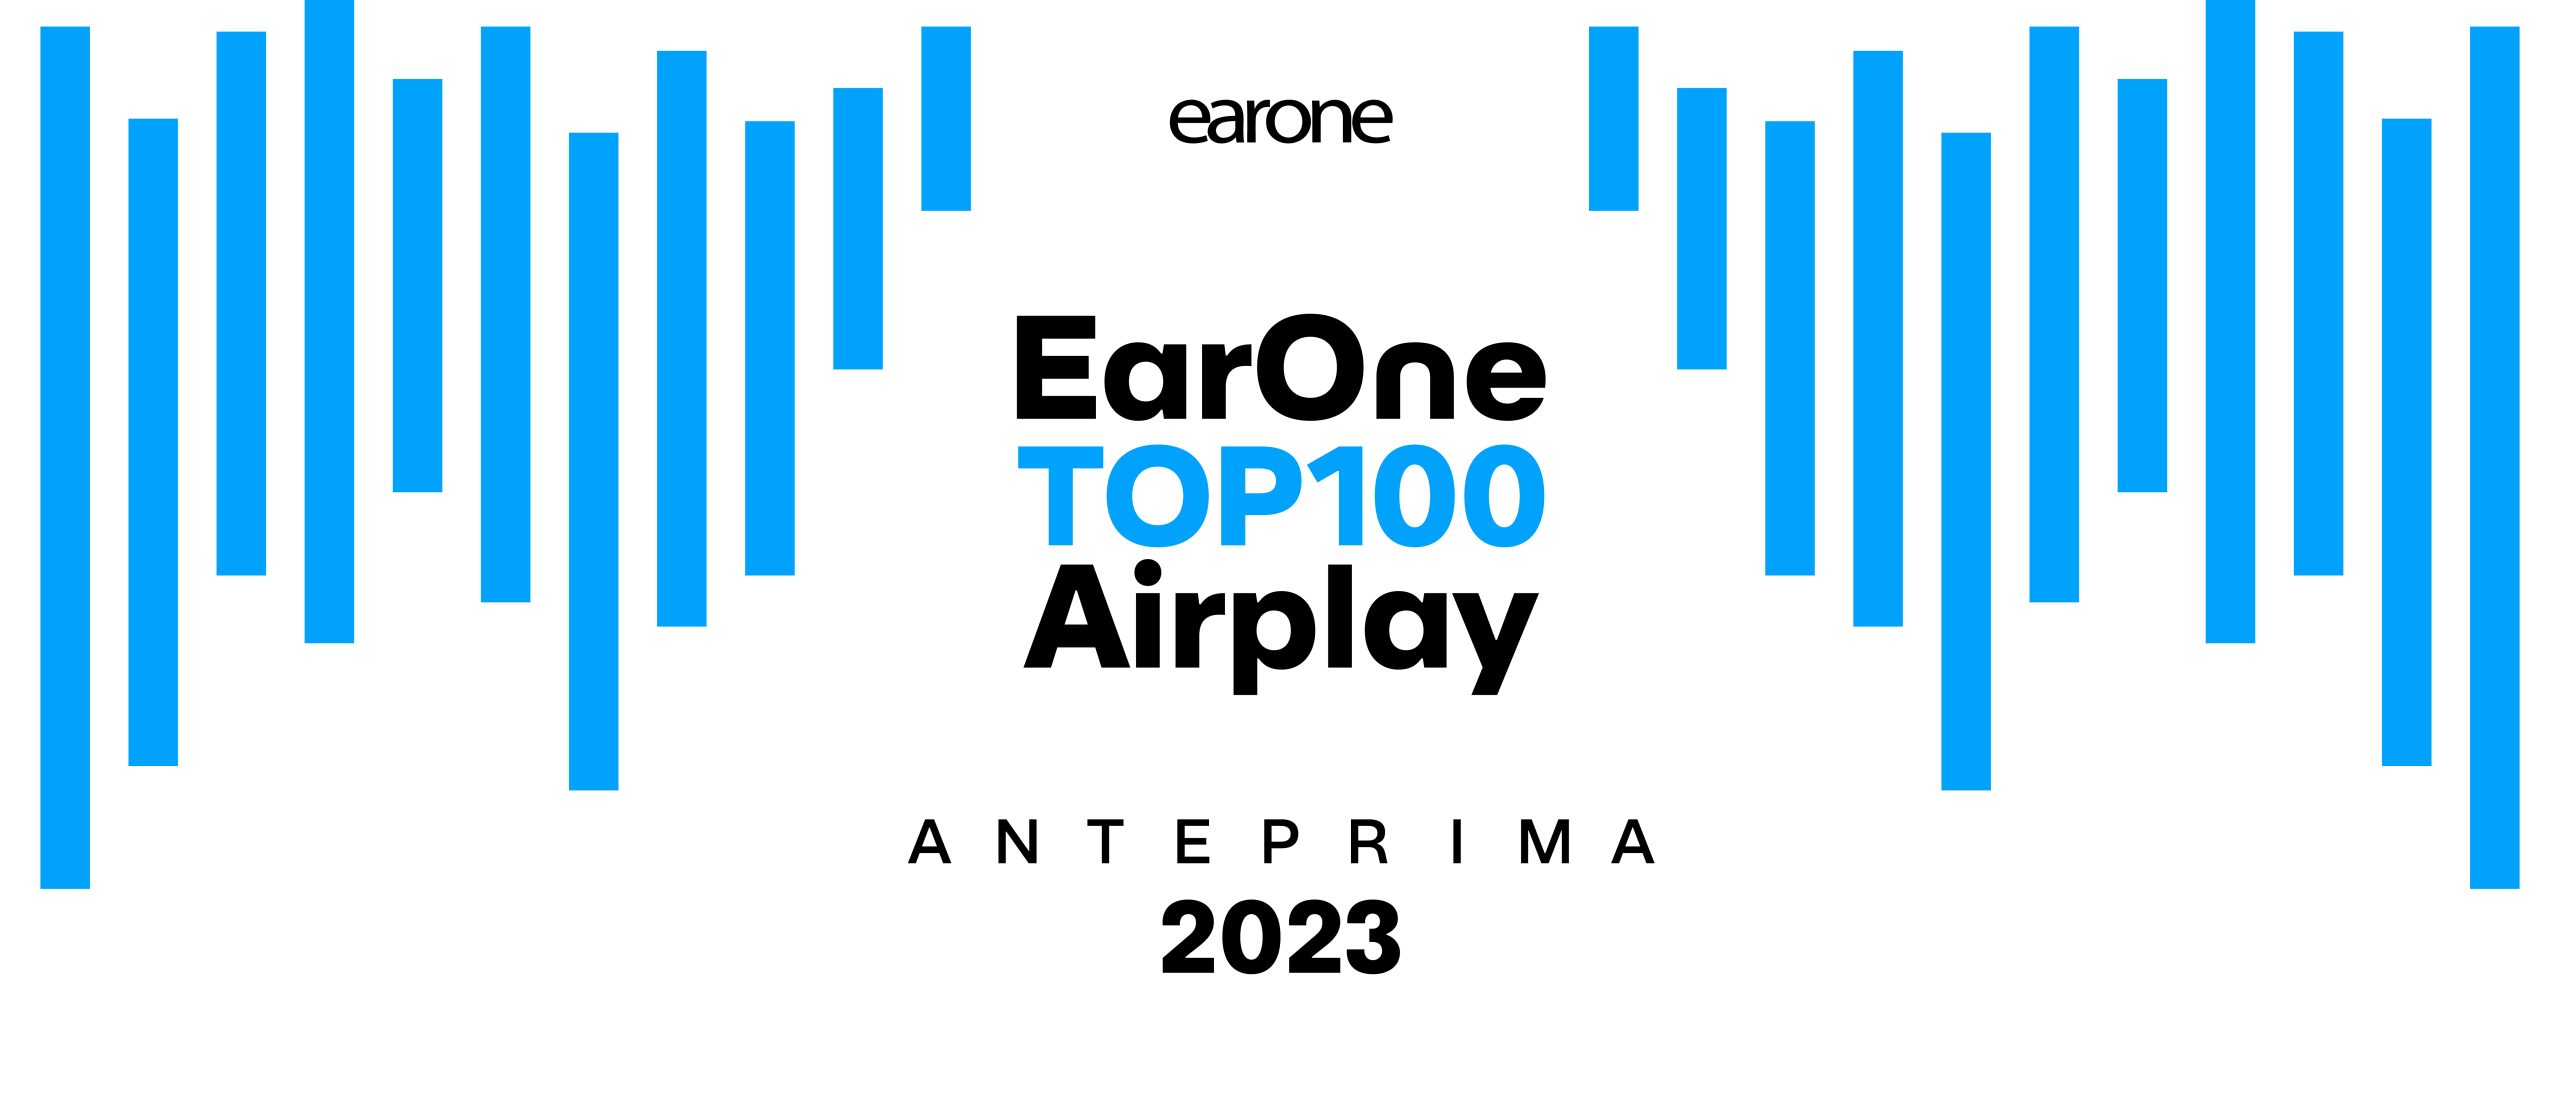 Anticipazione delle Top 100 Airplay 2023 Radio e TV